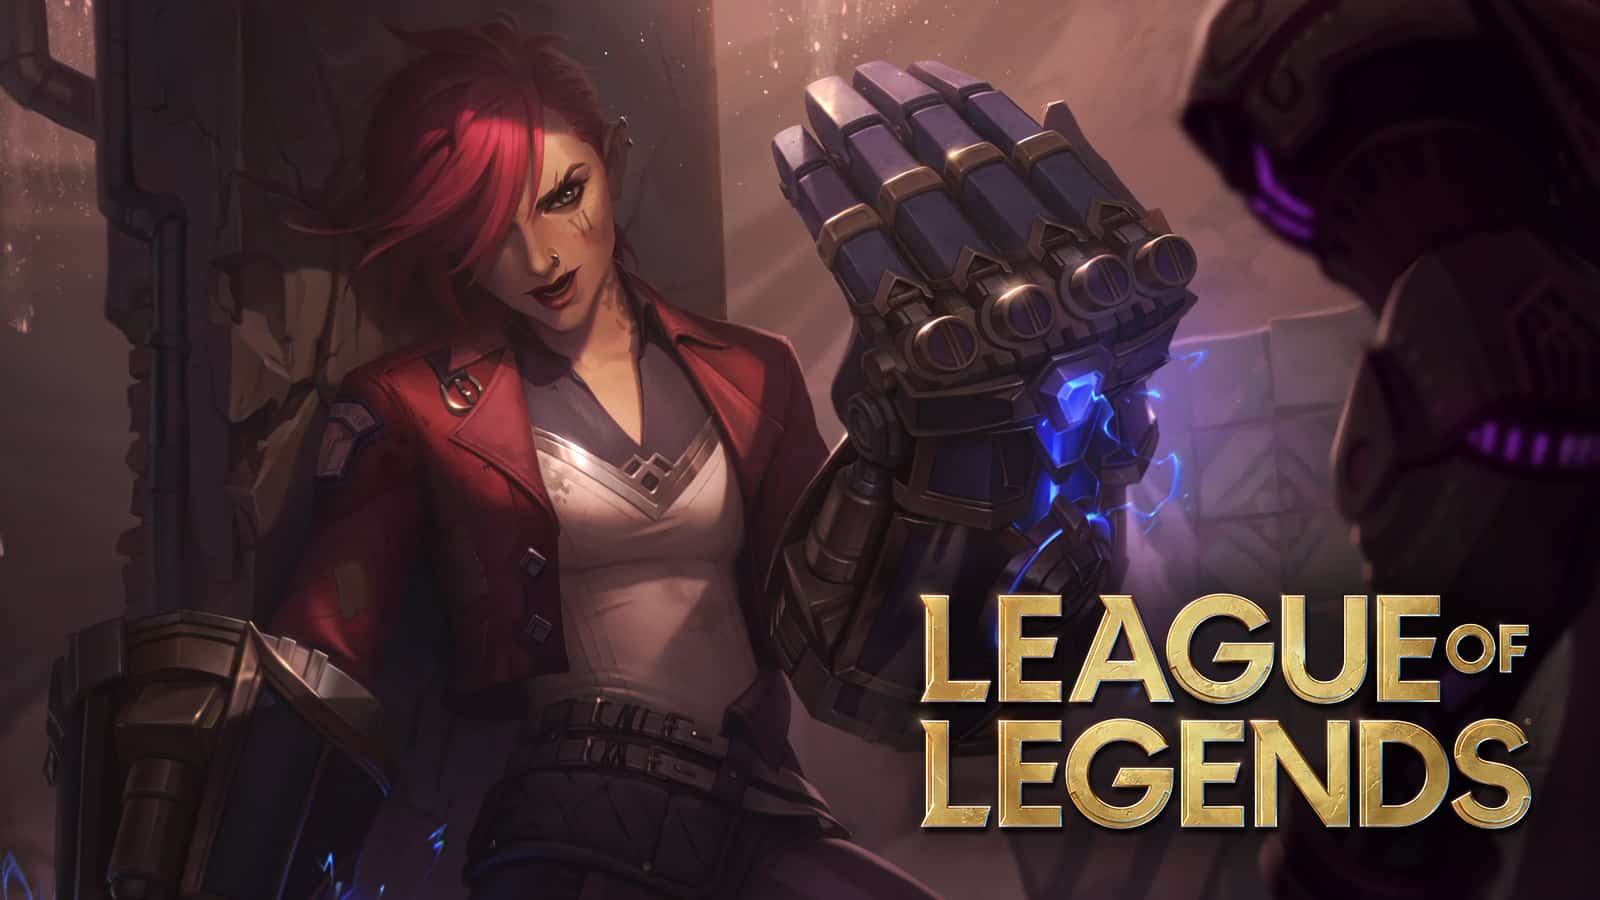 League of Legends Pc game buff league of legends champs Download